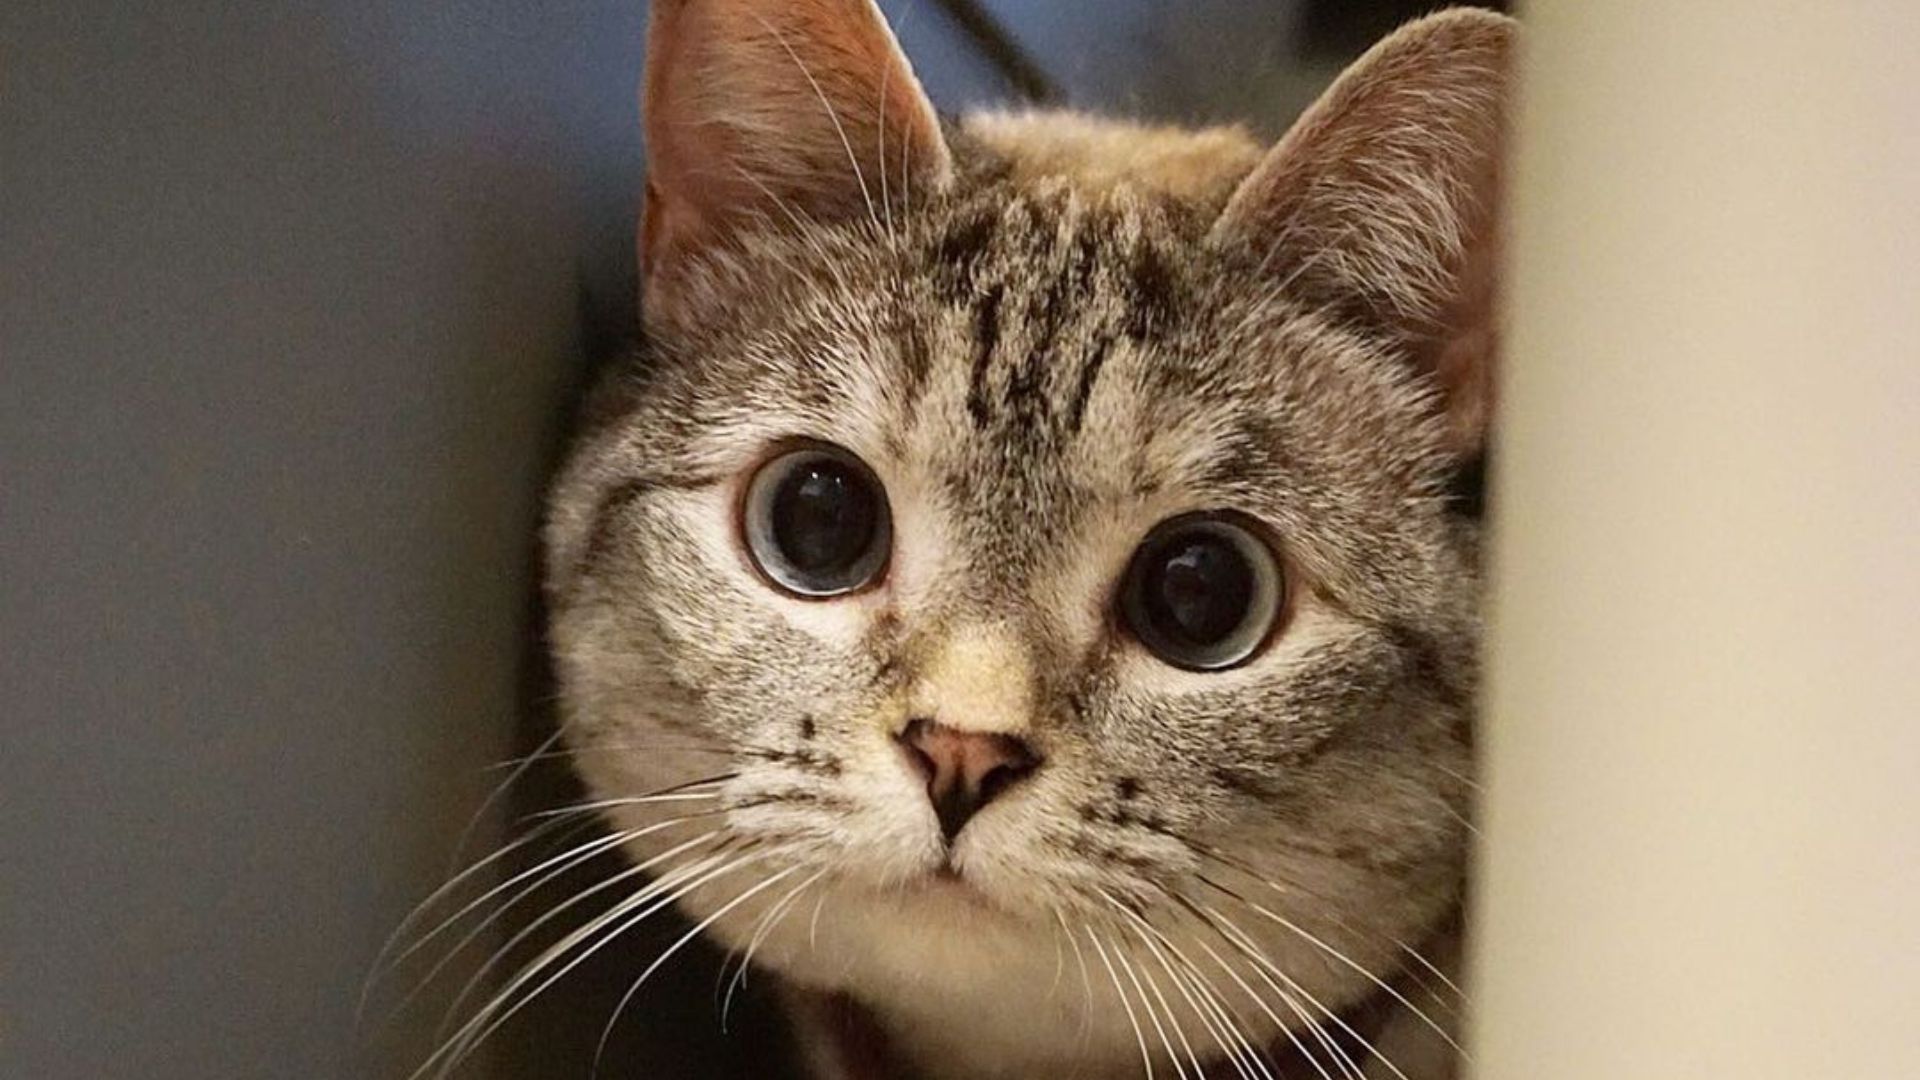 La historia de Nala, la gata que fue rescatada de un refugio y ahora factura millones de dólares